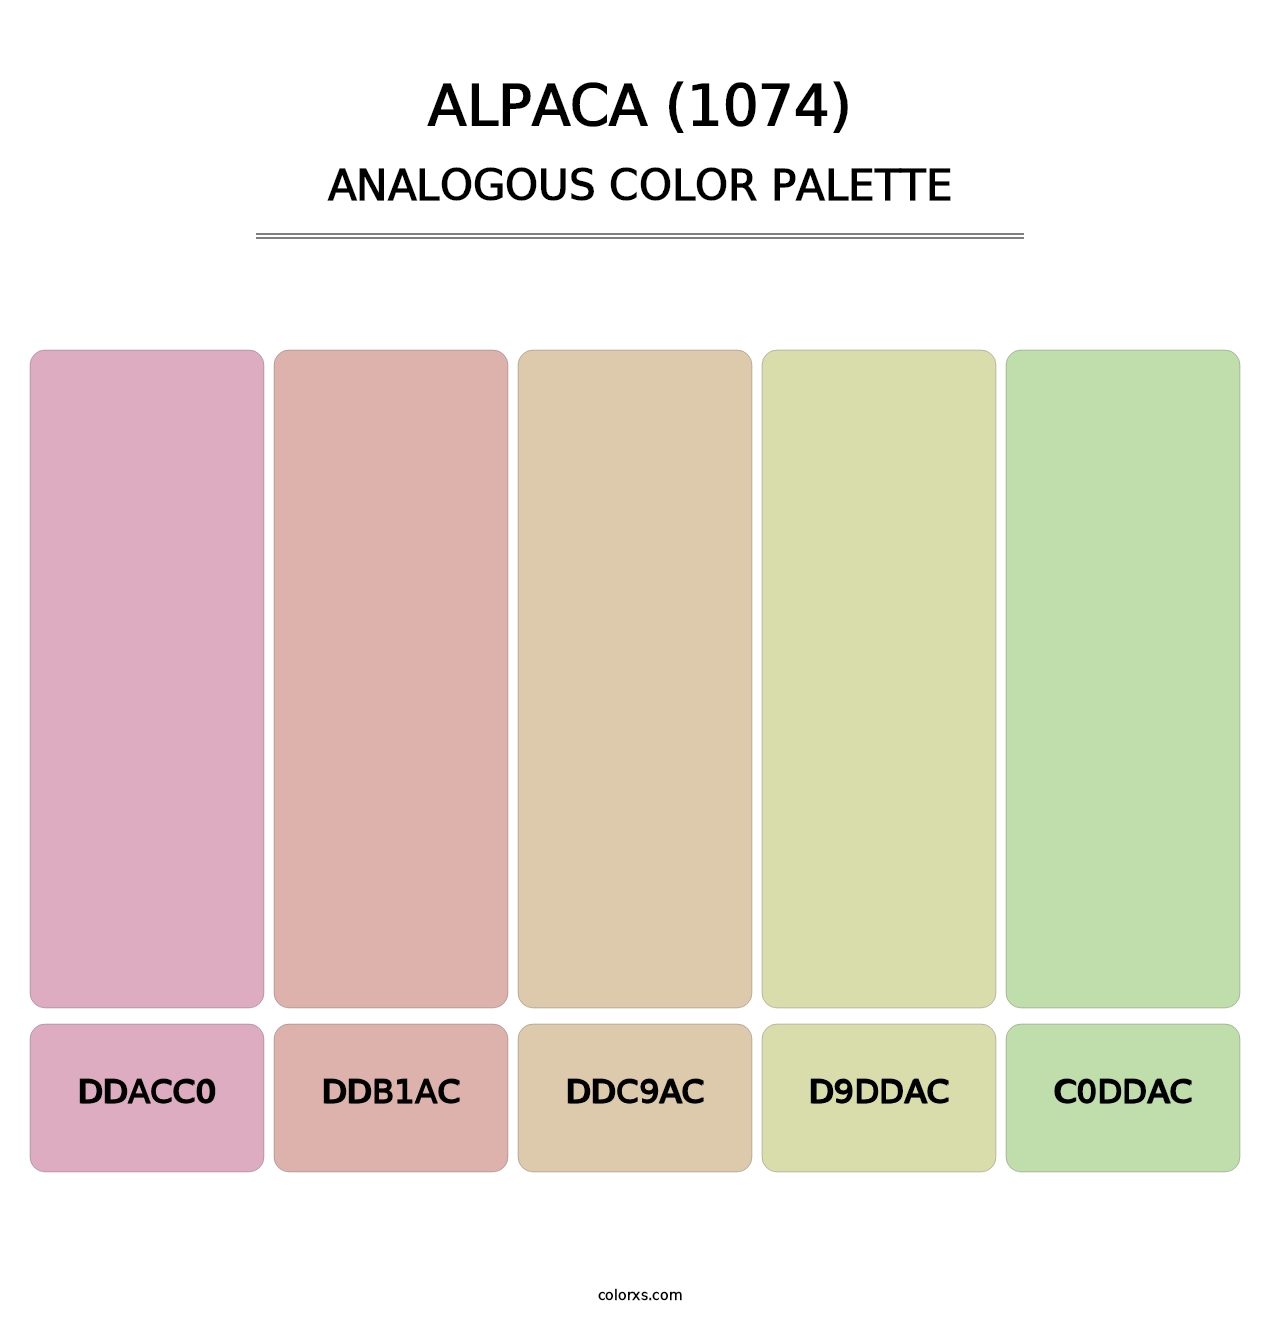 Alpaca (1074) - Analogous Color Palette